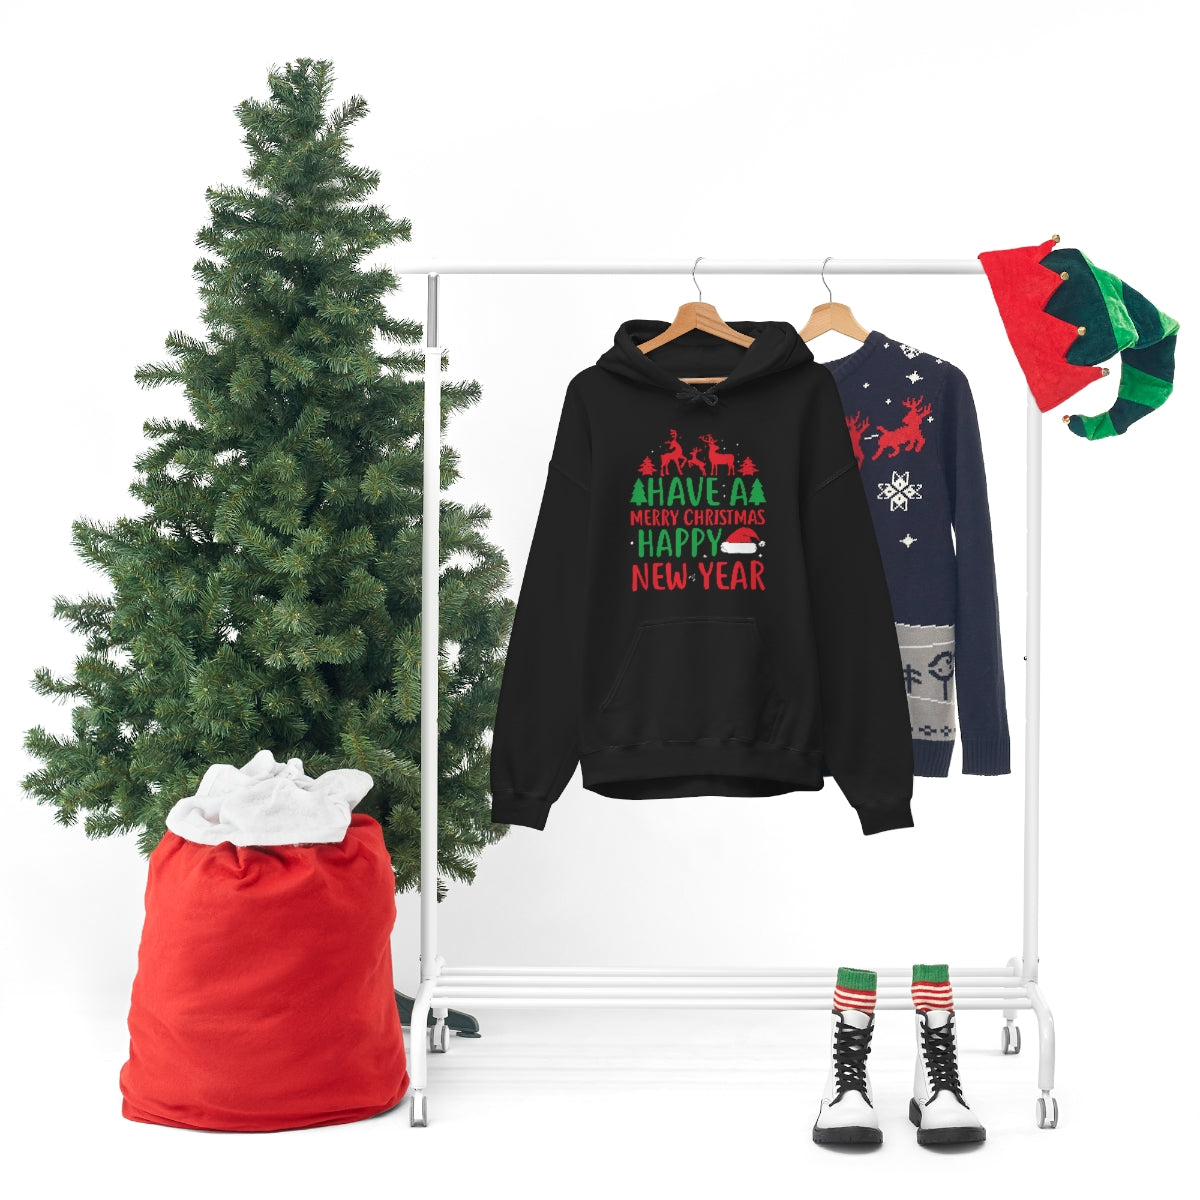 Merry Christmas Hoodie Unisex Custom Hoodie , Hooded Sweatshirt , HAVE A MERRY CHRISTMAS HAPPY NEW YEAR Printify